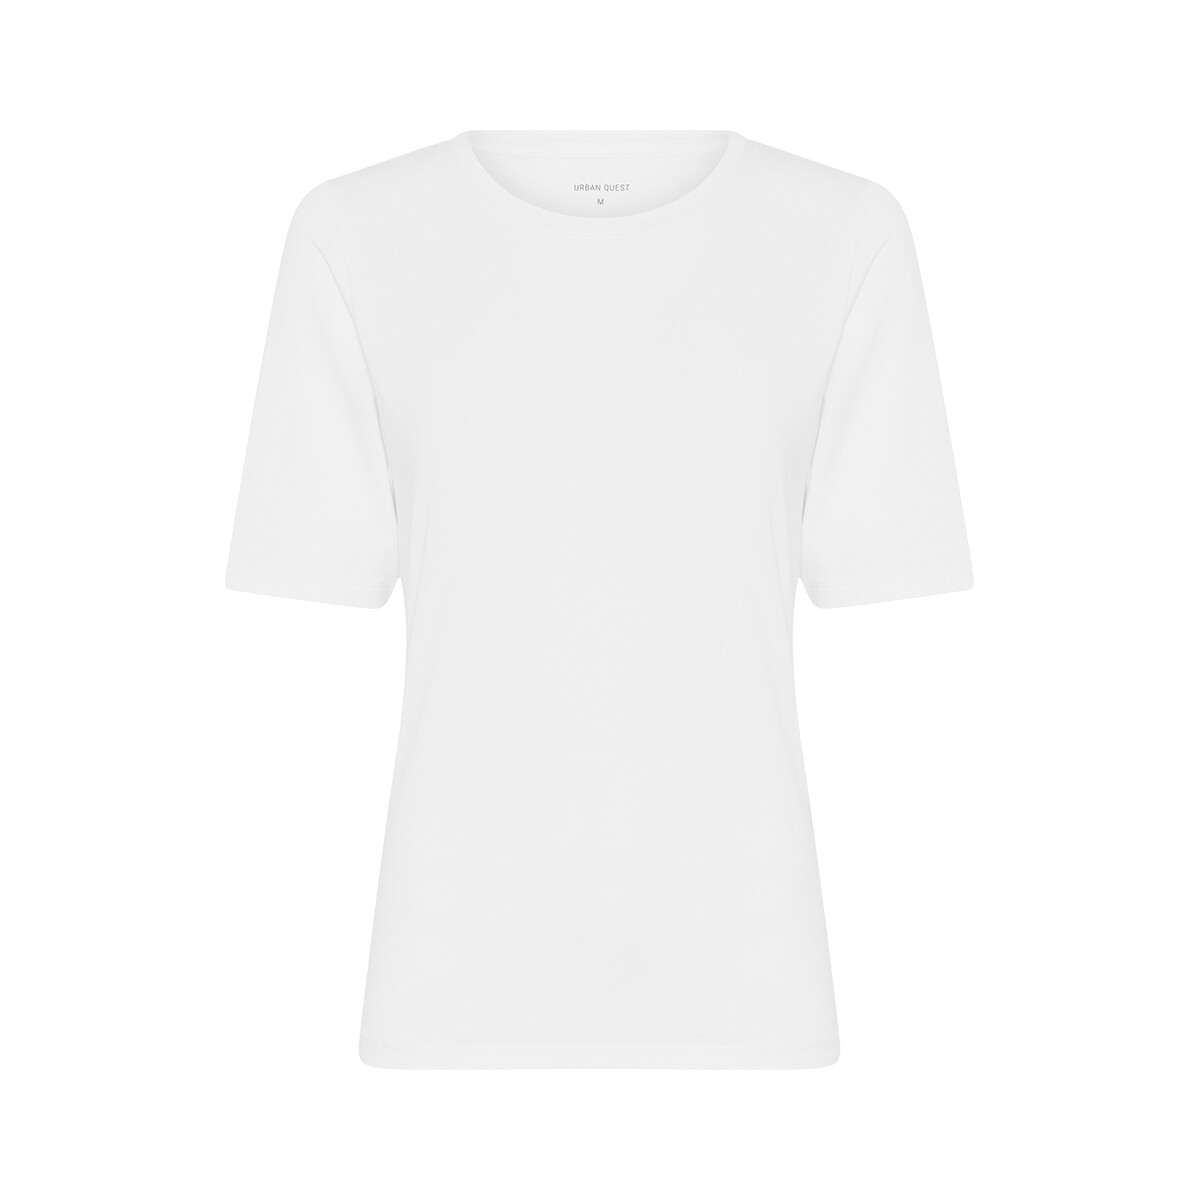 Se Urban Quest Bamboo Slim Fit T-shirt, Farve: Hvid, Størrelse: XL, Dame hos Netlingeri.dk